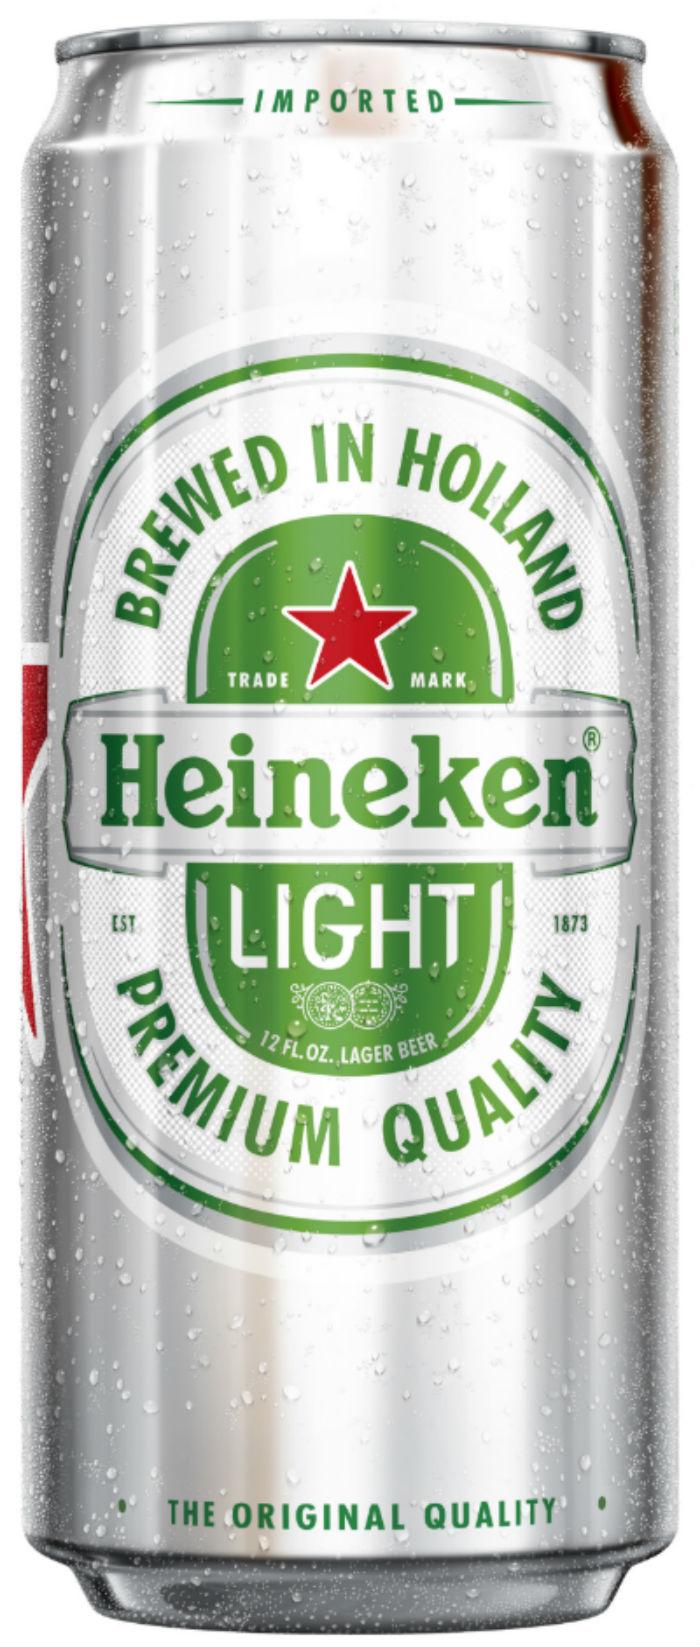 Heineken-Light-can.jpg